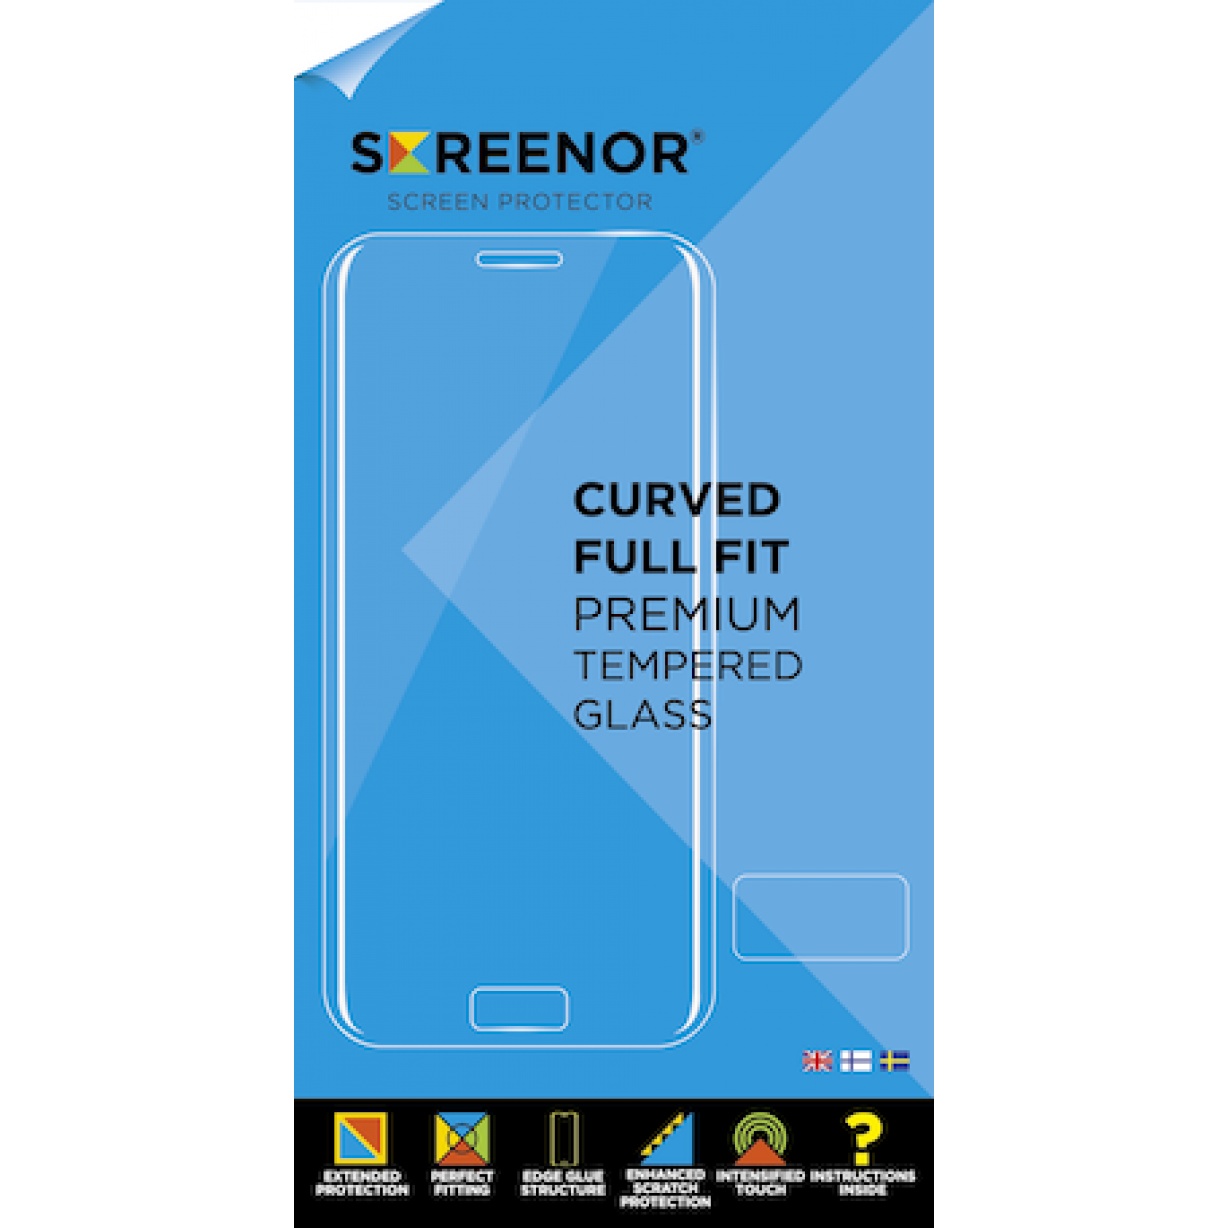 Apsauginis stiklas Screenor Curved Premium Tempered Glass Nokia 5